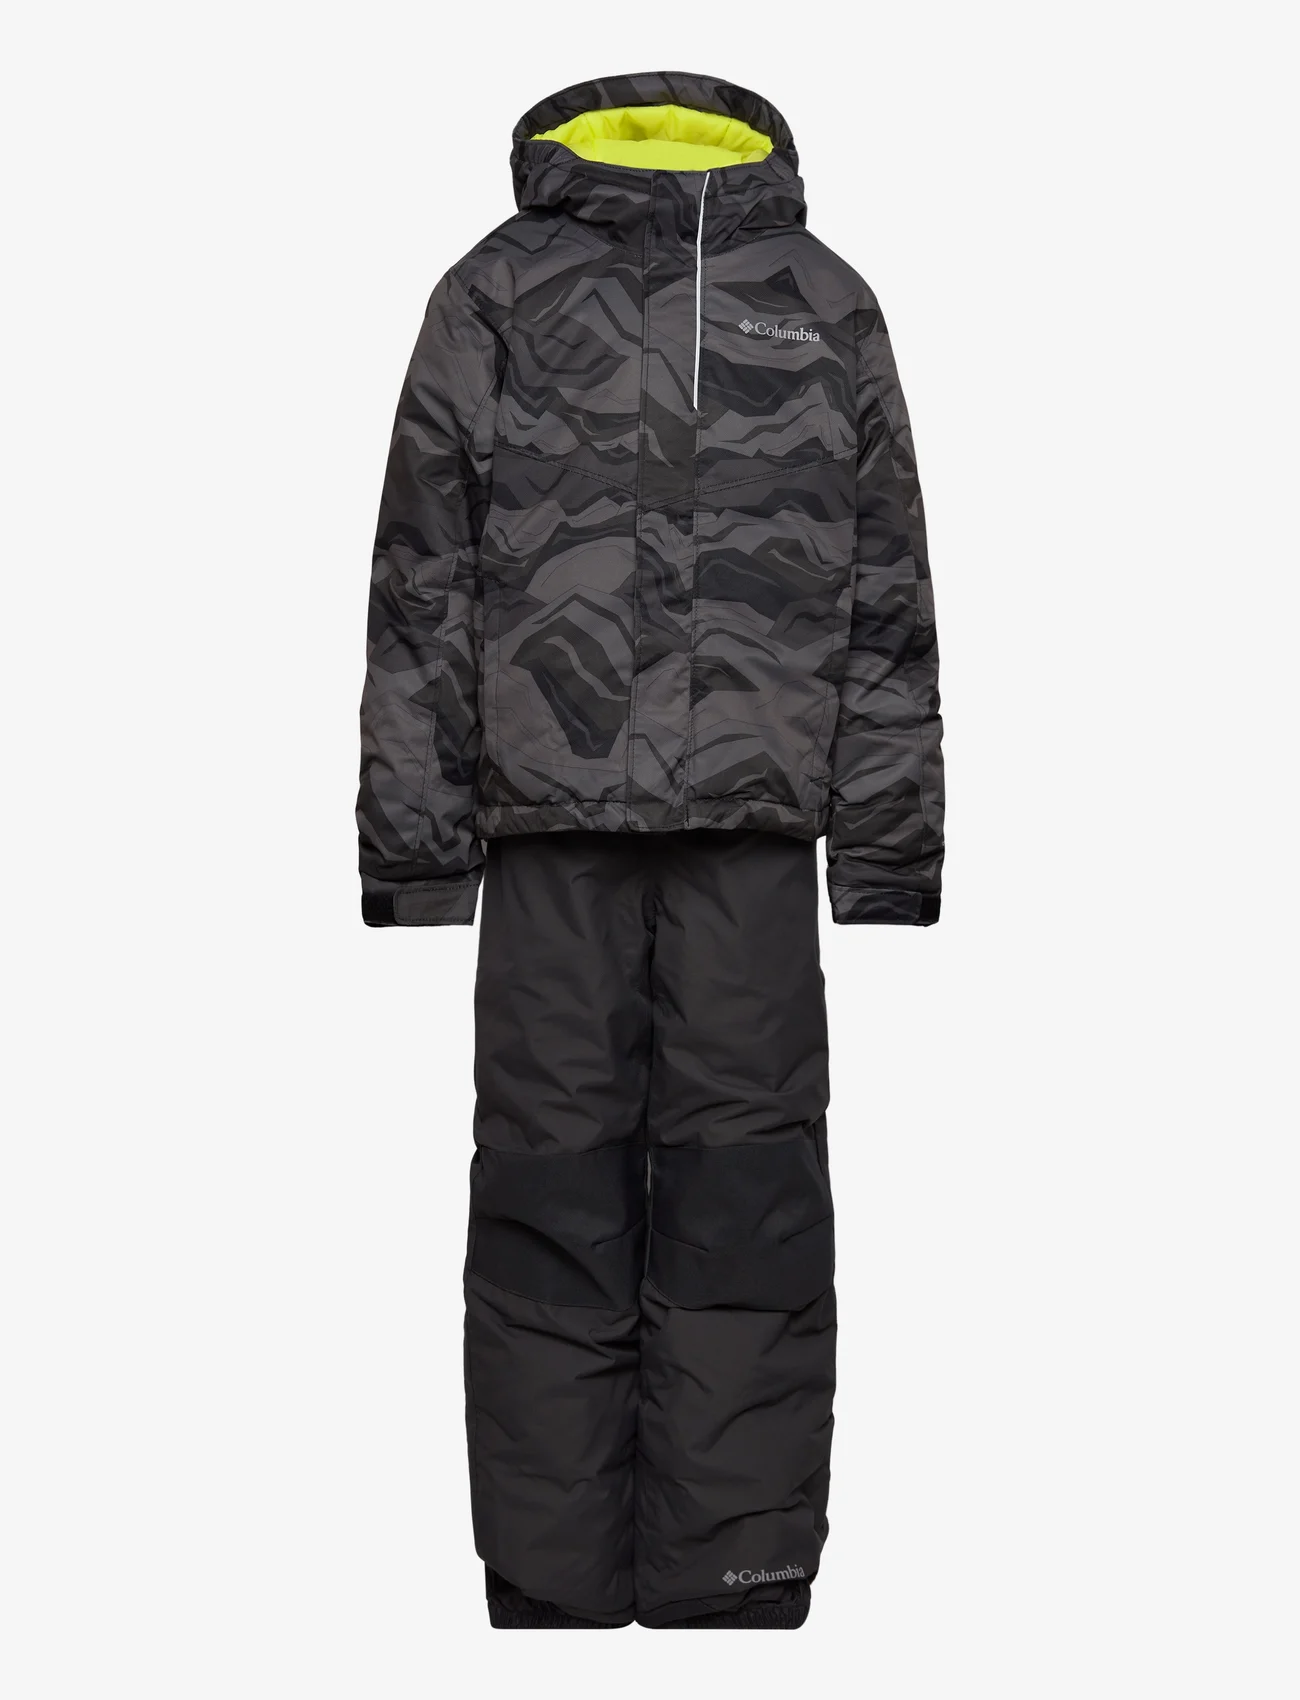 Columbia Sportswear - Buga Set - børn - black tectonic - 0